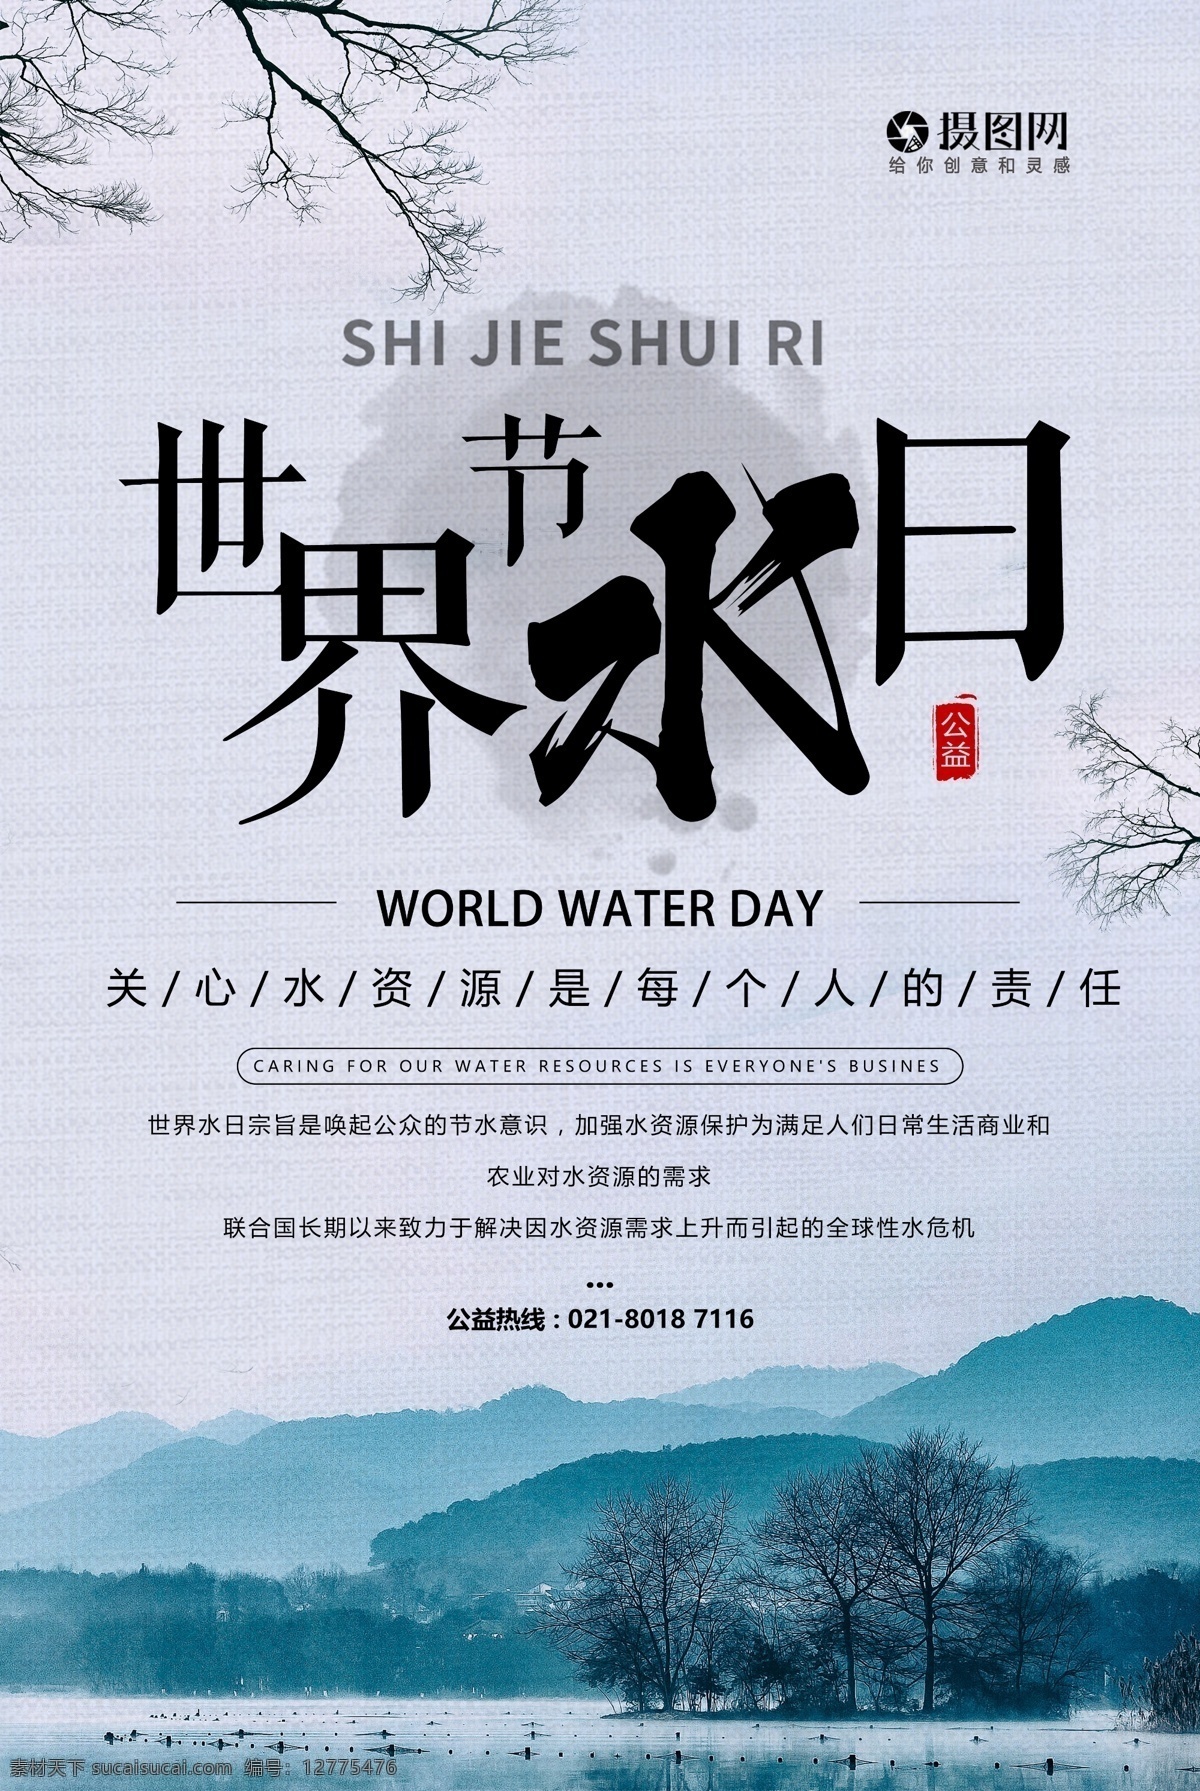 保护 水资源 世界 水日 海报 保护水资 源世界水日 节约用水 公益 公益海报 资源 世界水日 宣传海报 保护水资源